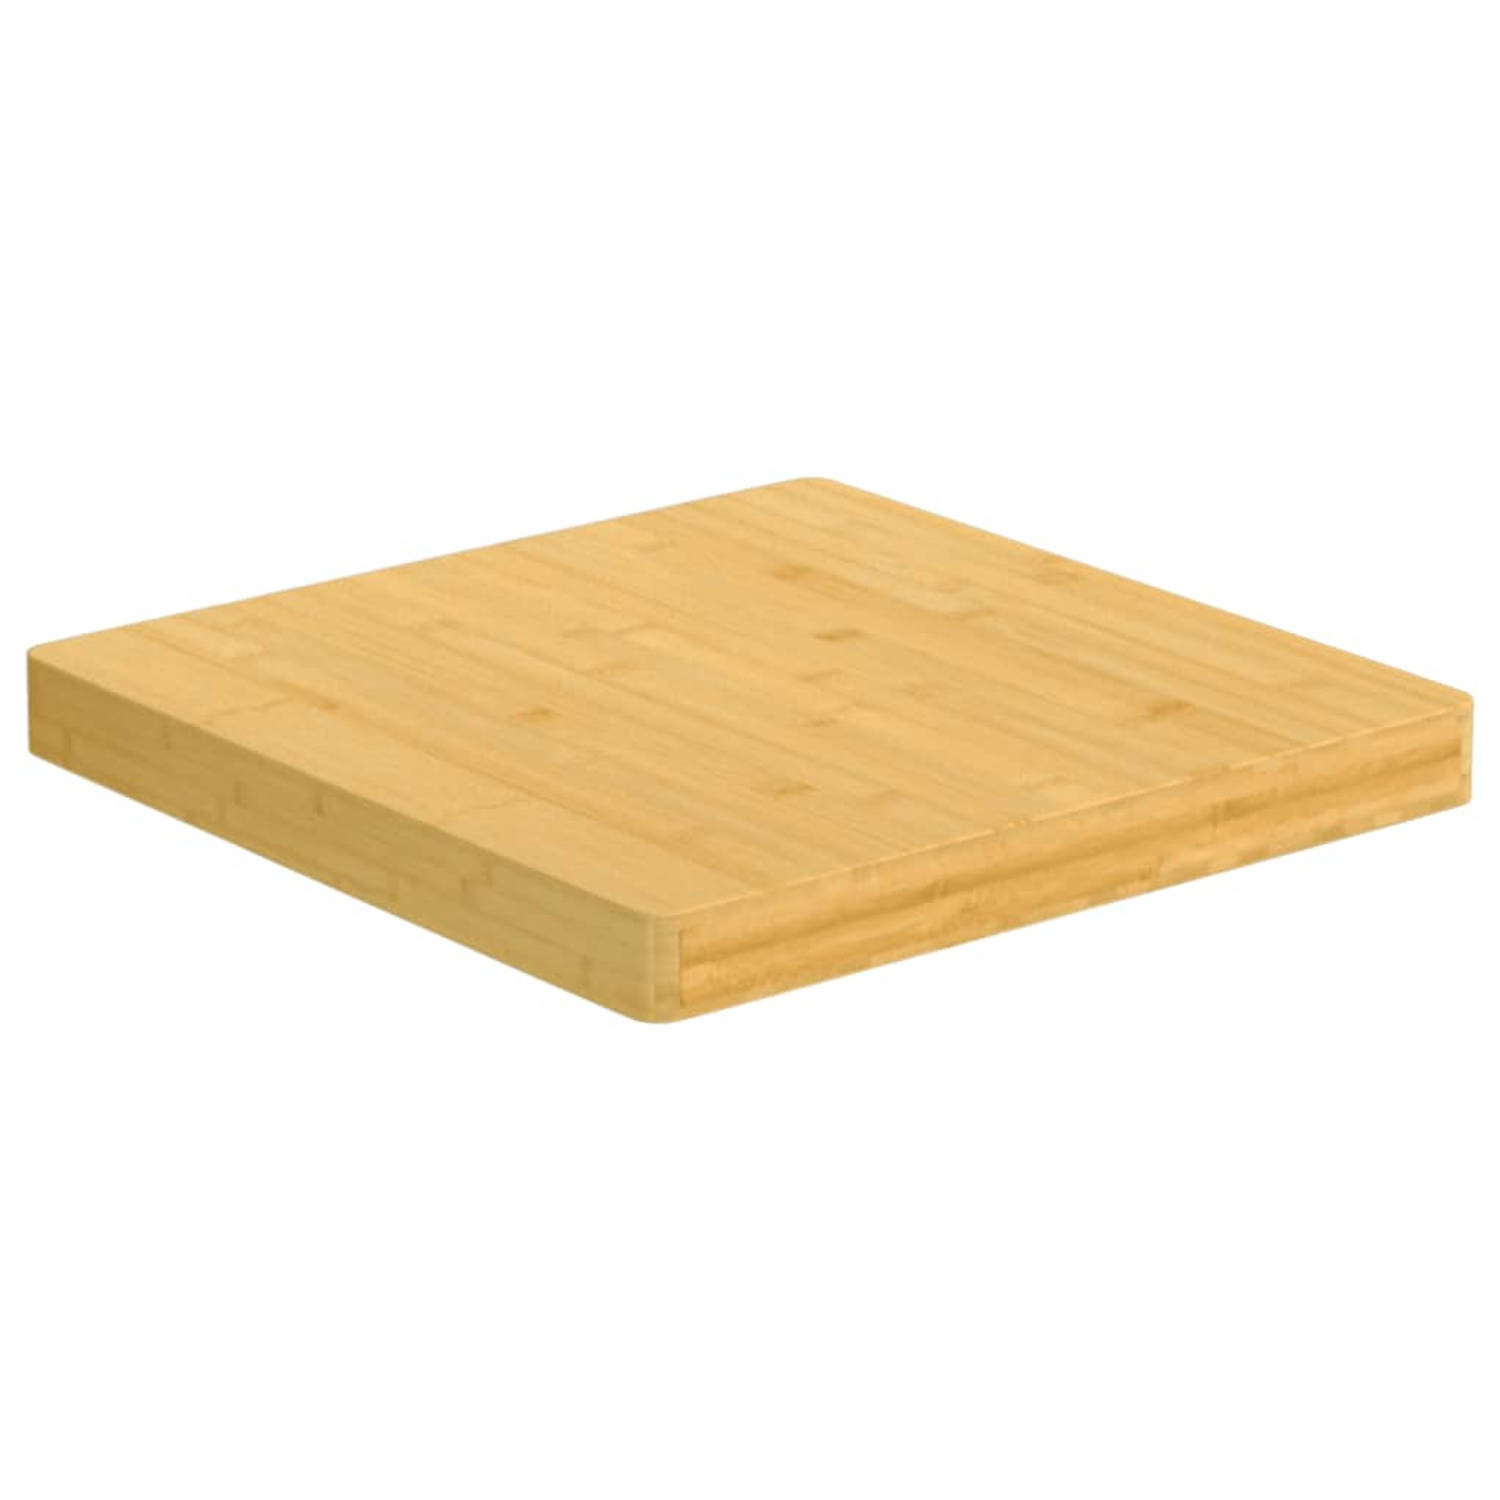 The Living Store Bamboe Tafelblad - 50x50x4cm - Duurzaam materiaal - Veelzijdig - Afgeronde randen - Eenvoudig schoon te maken oppervlak